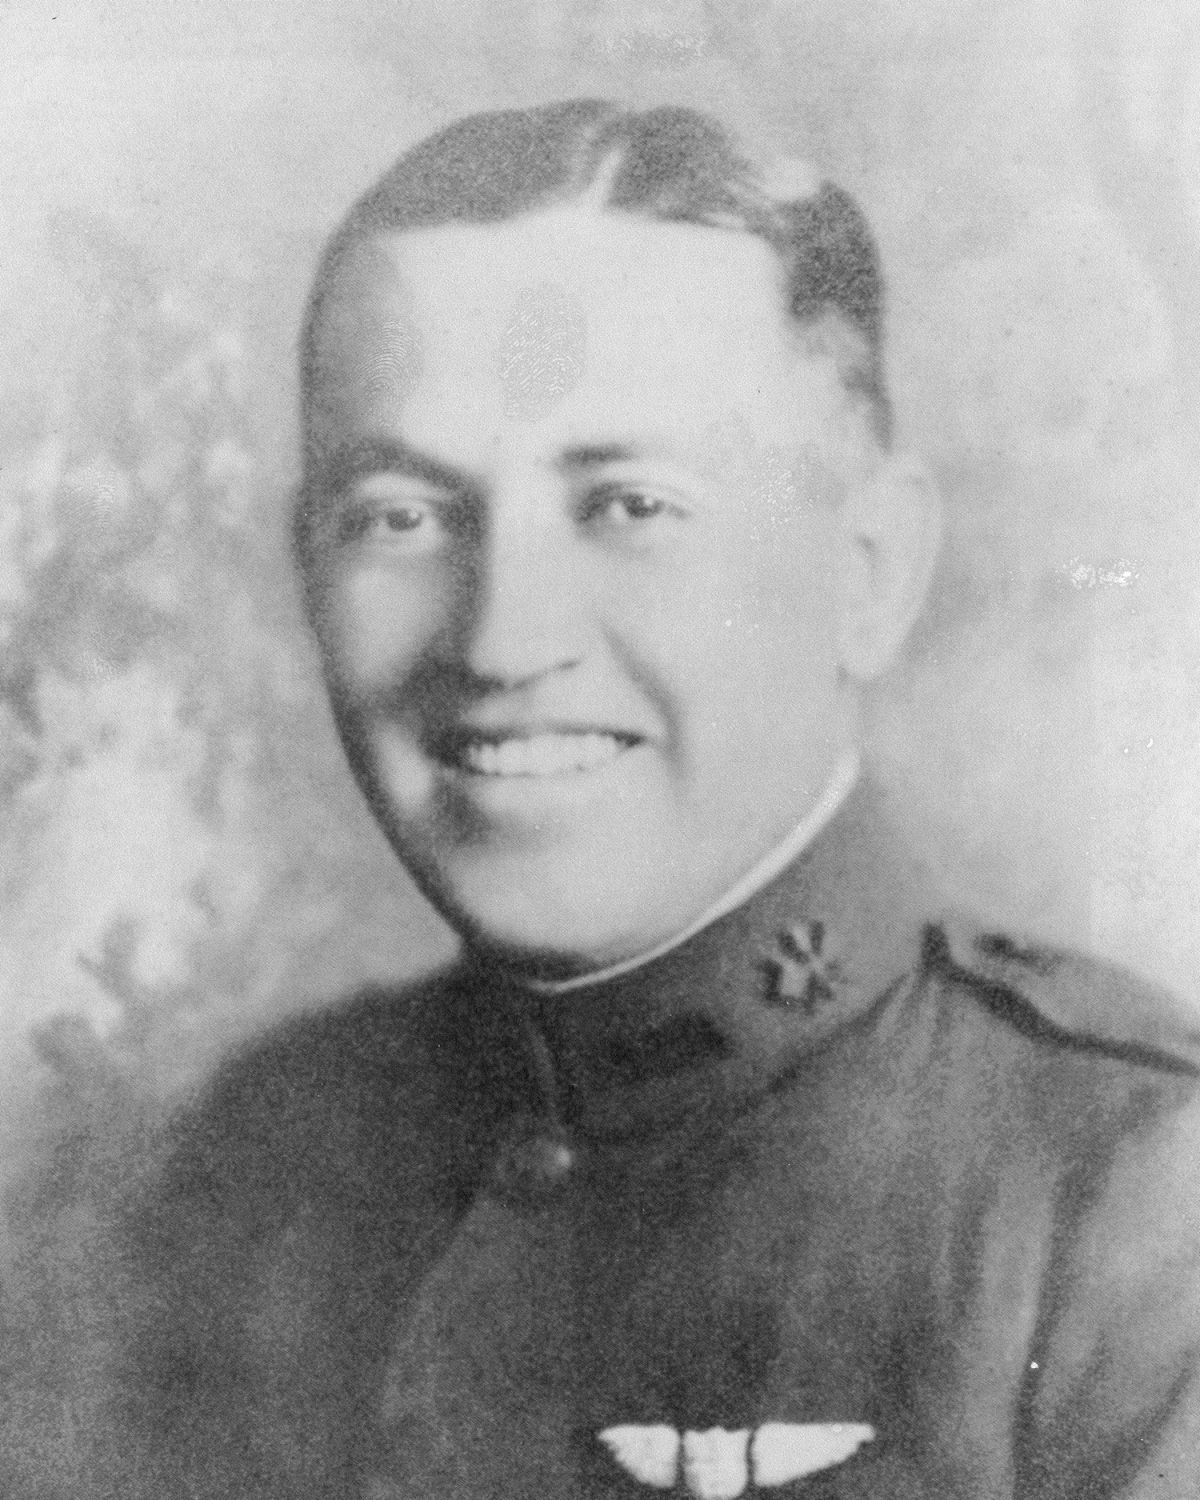 Lt. Henry Westall